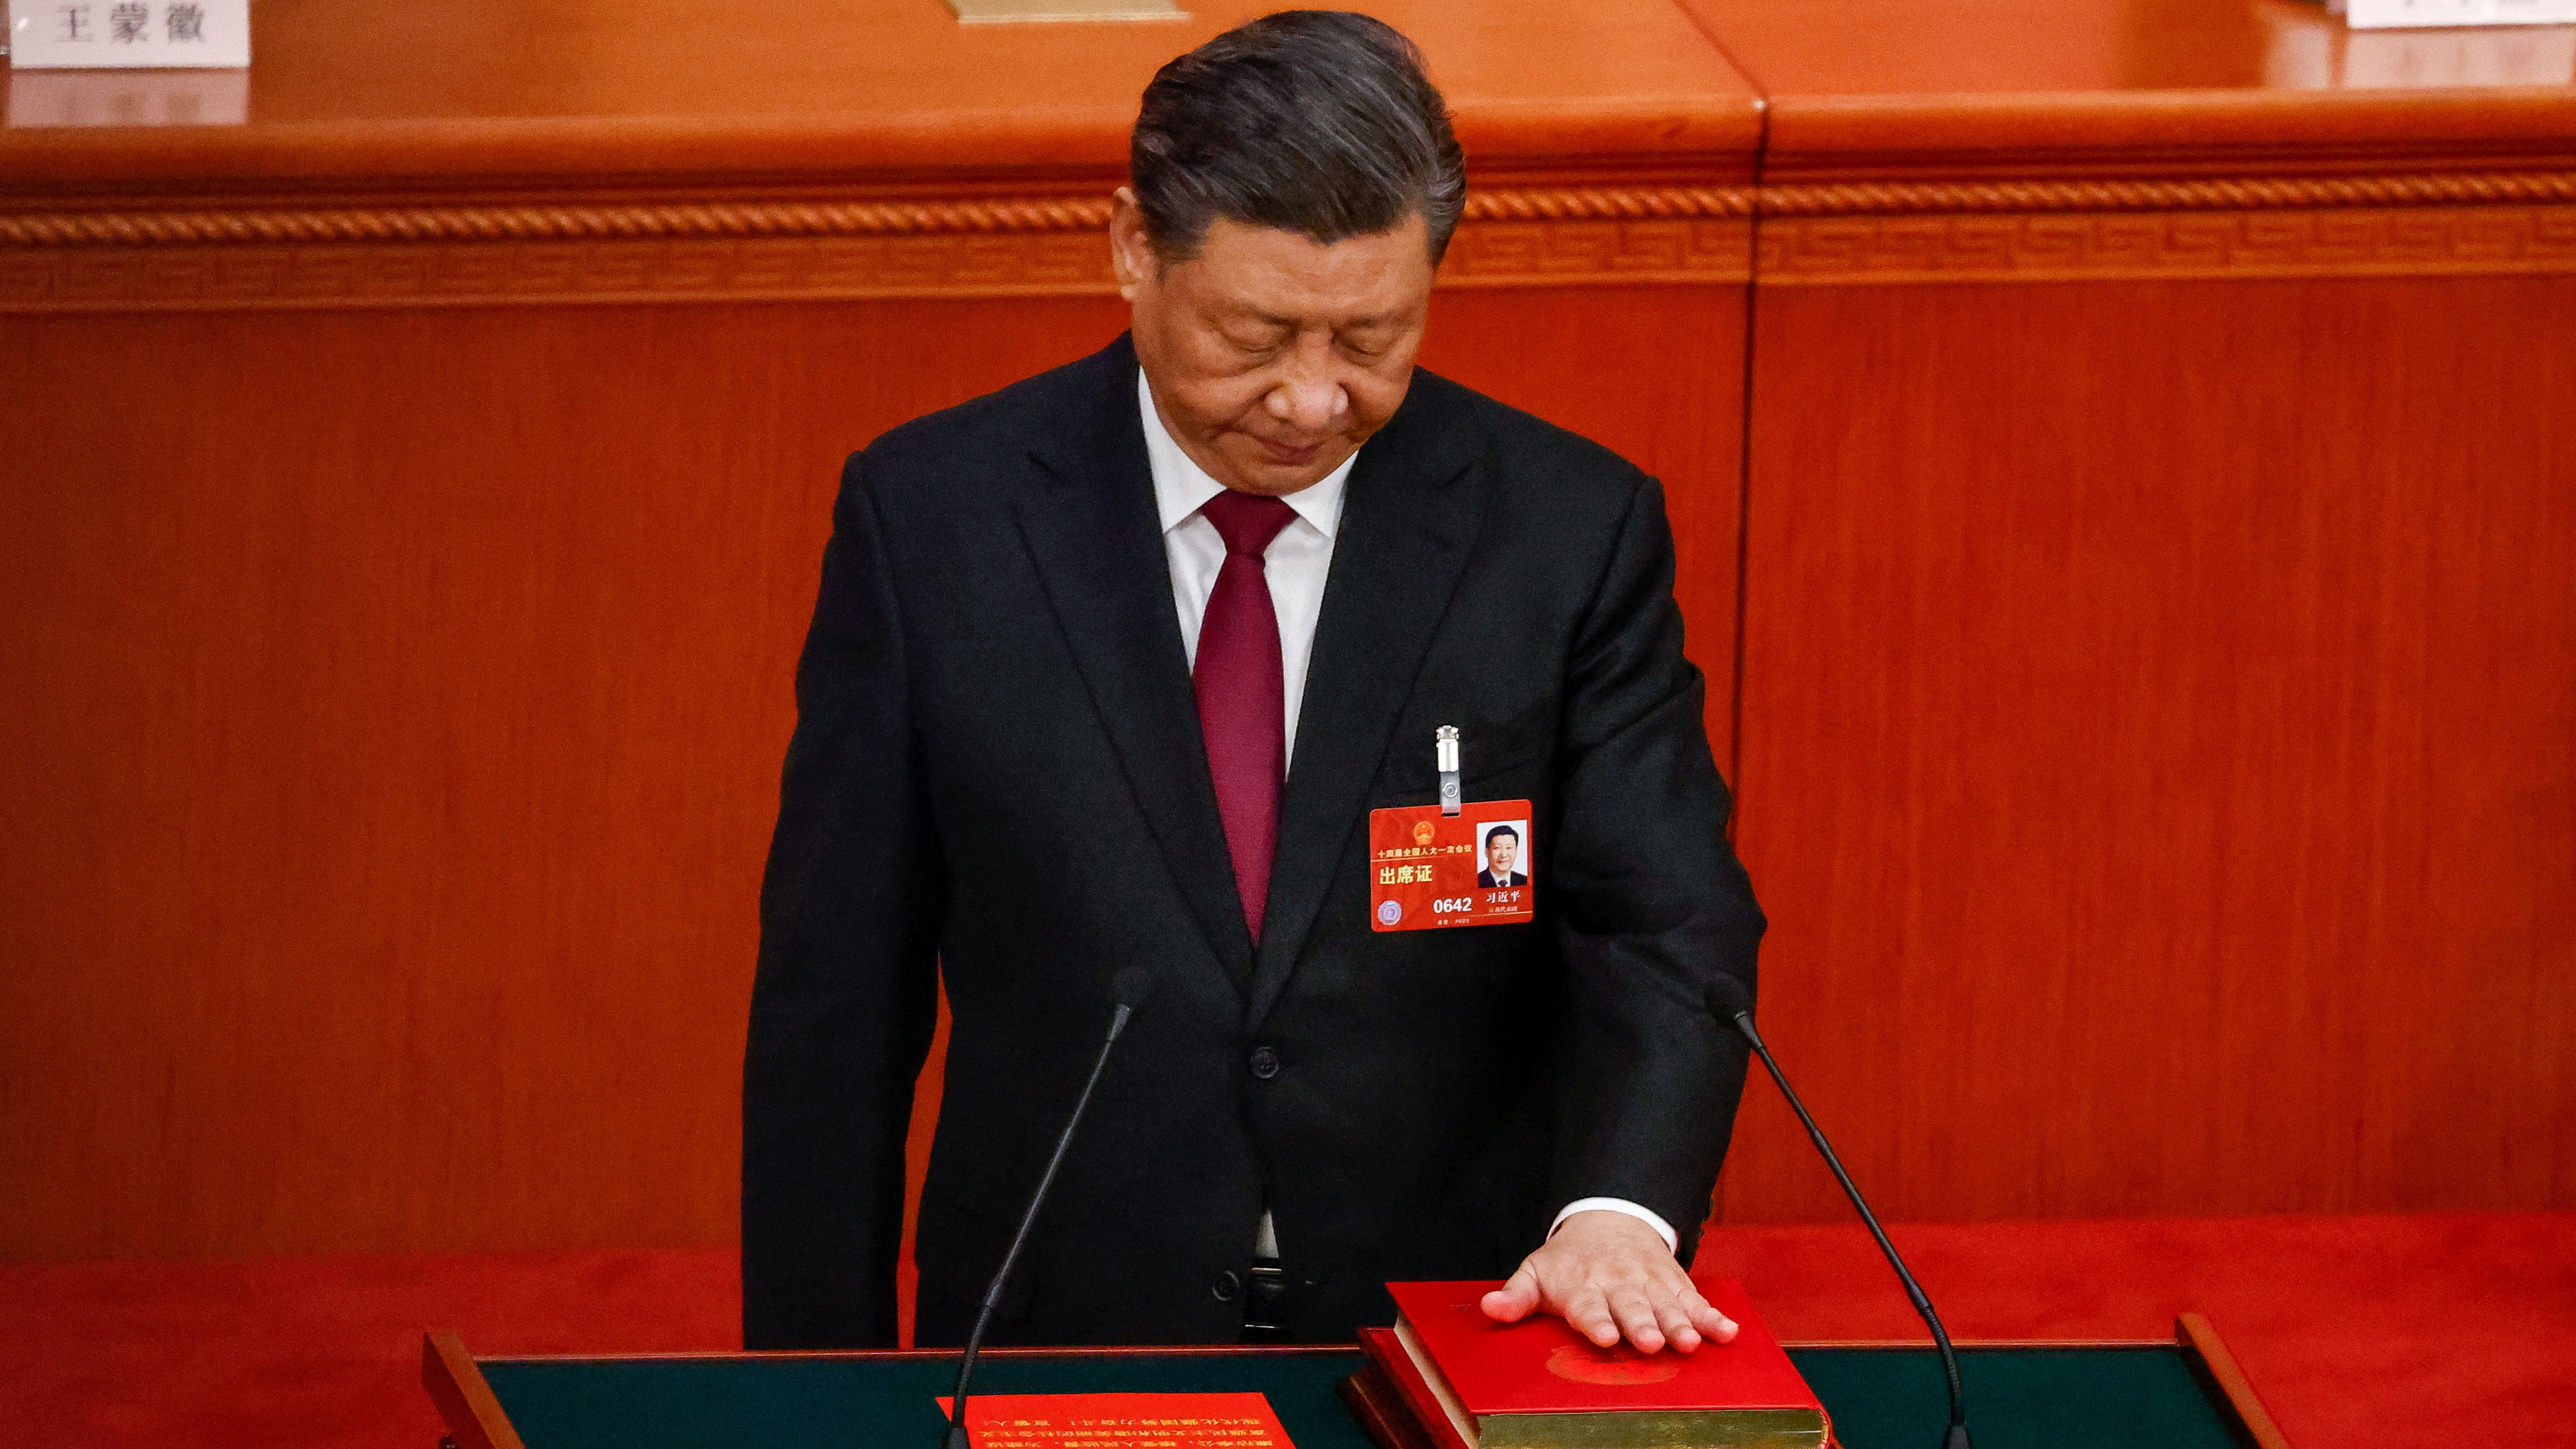 El pasado octubre, Xi Jinping revalidó su puesto como secretario general del Partido Comunista Chino (PCCh). Así, queda reforzado el control del mandatario sobre los tres brazos del poder: el Estado, el PCCh y el Ejército. (REUTERS)